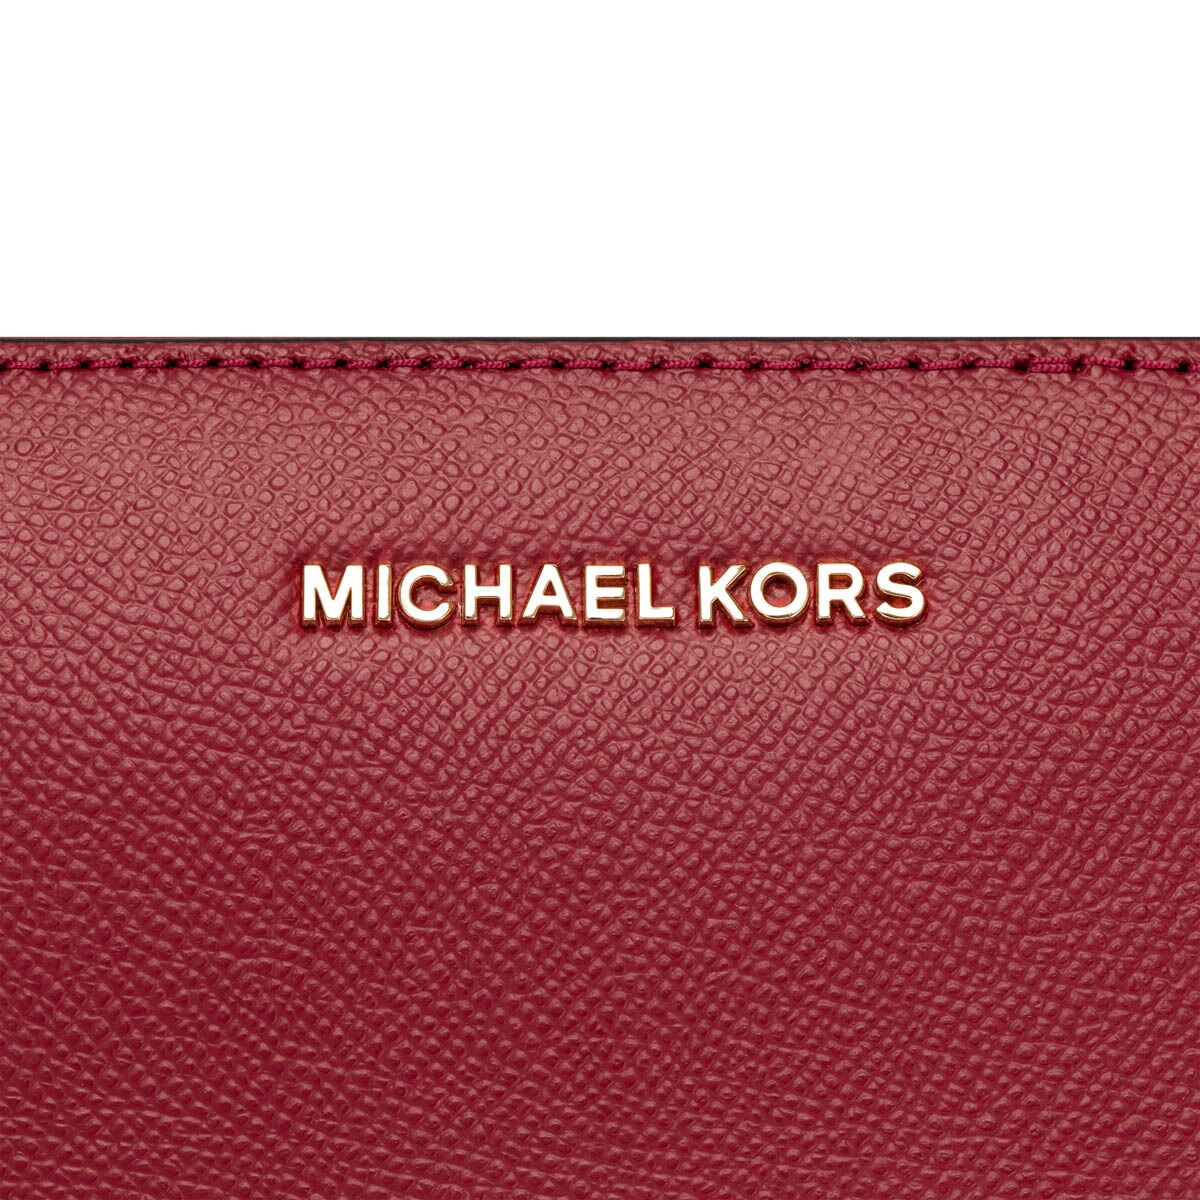 Michael Kors 皮革斜背包 野莓紅